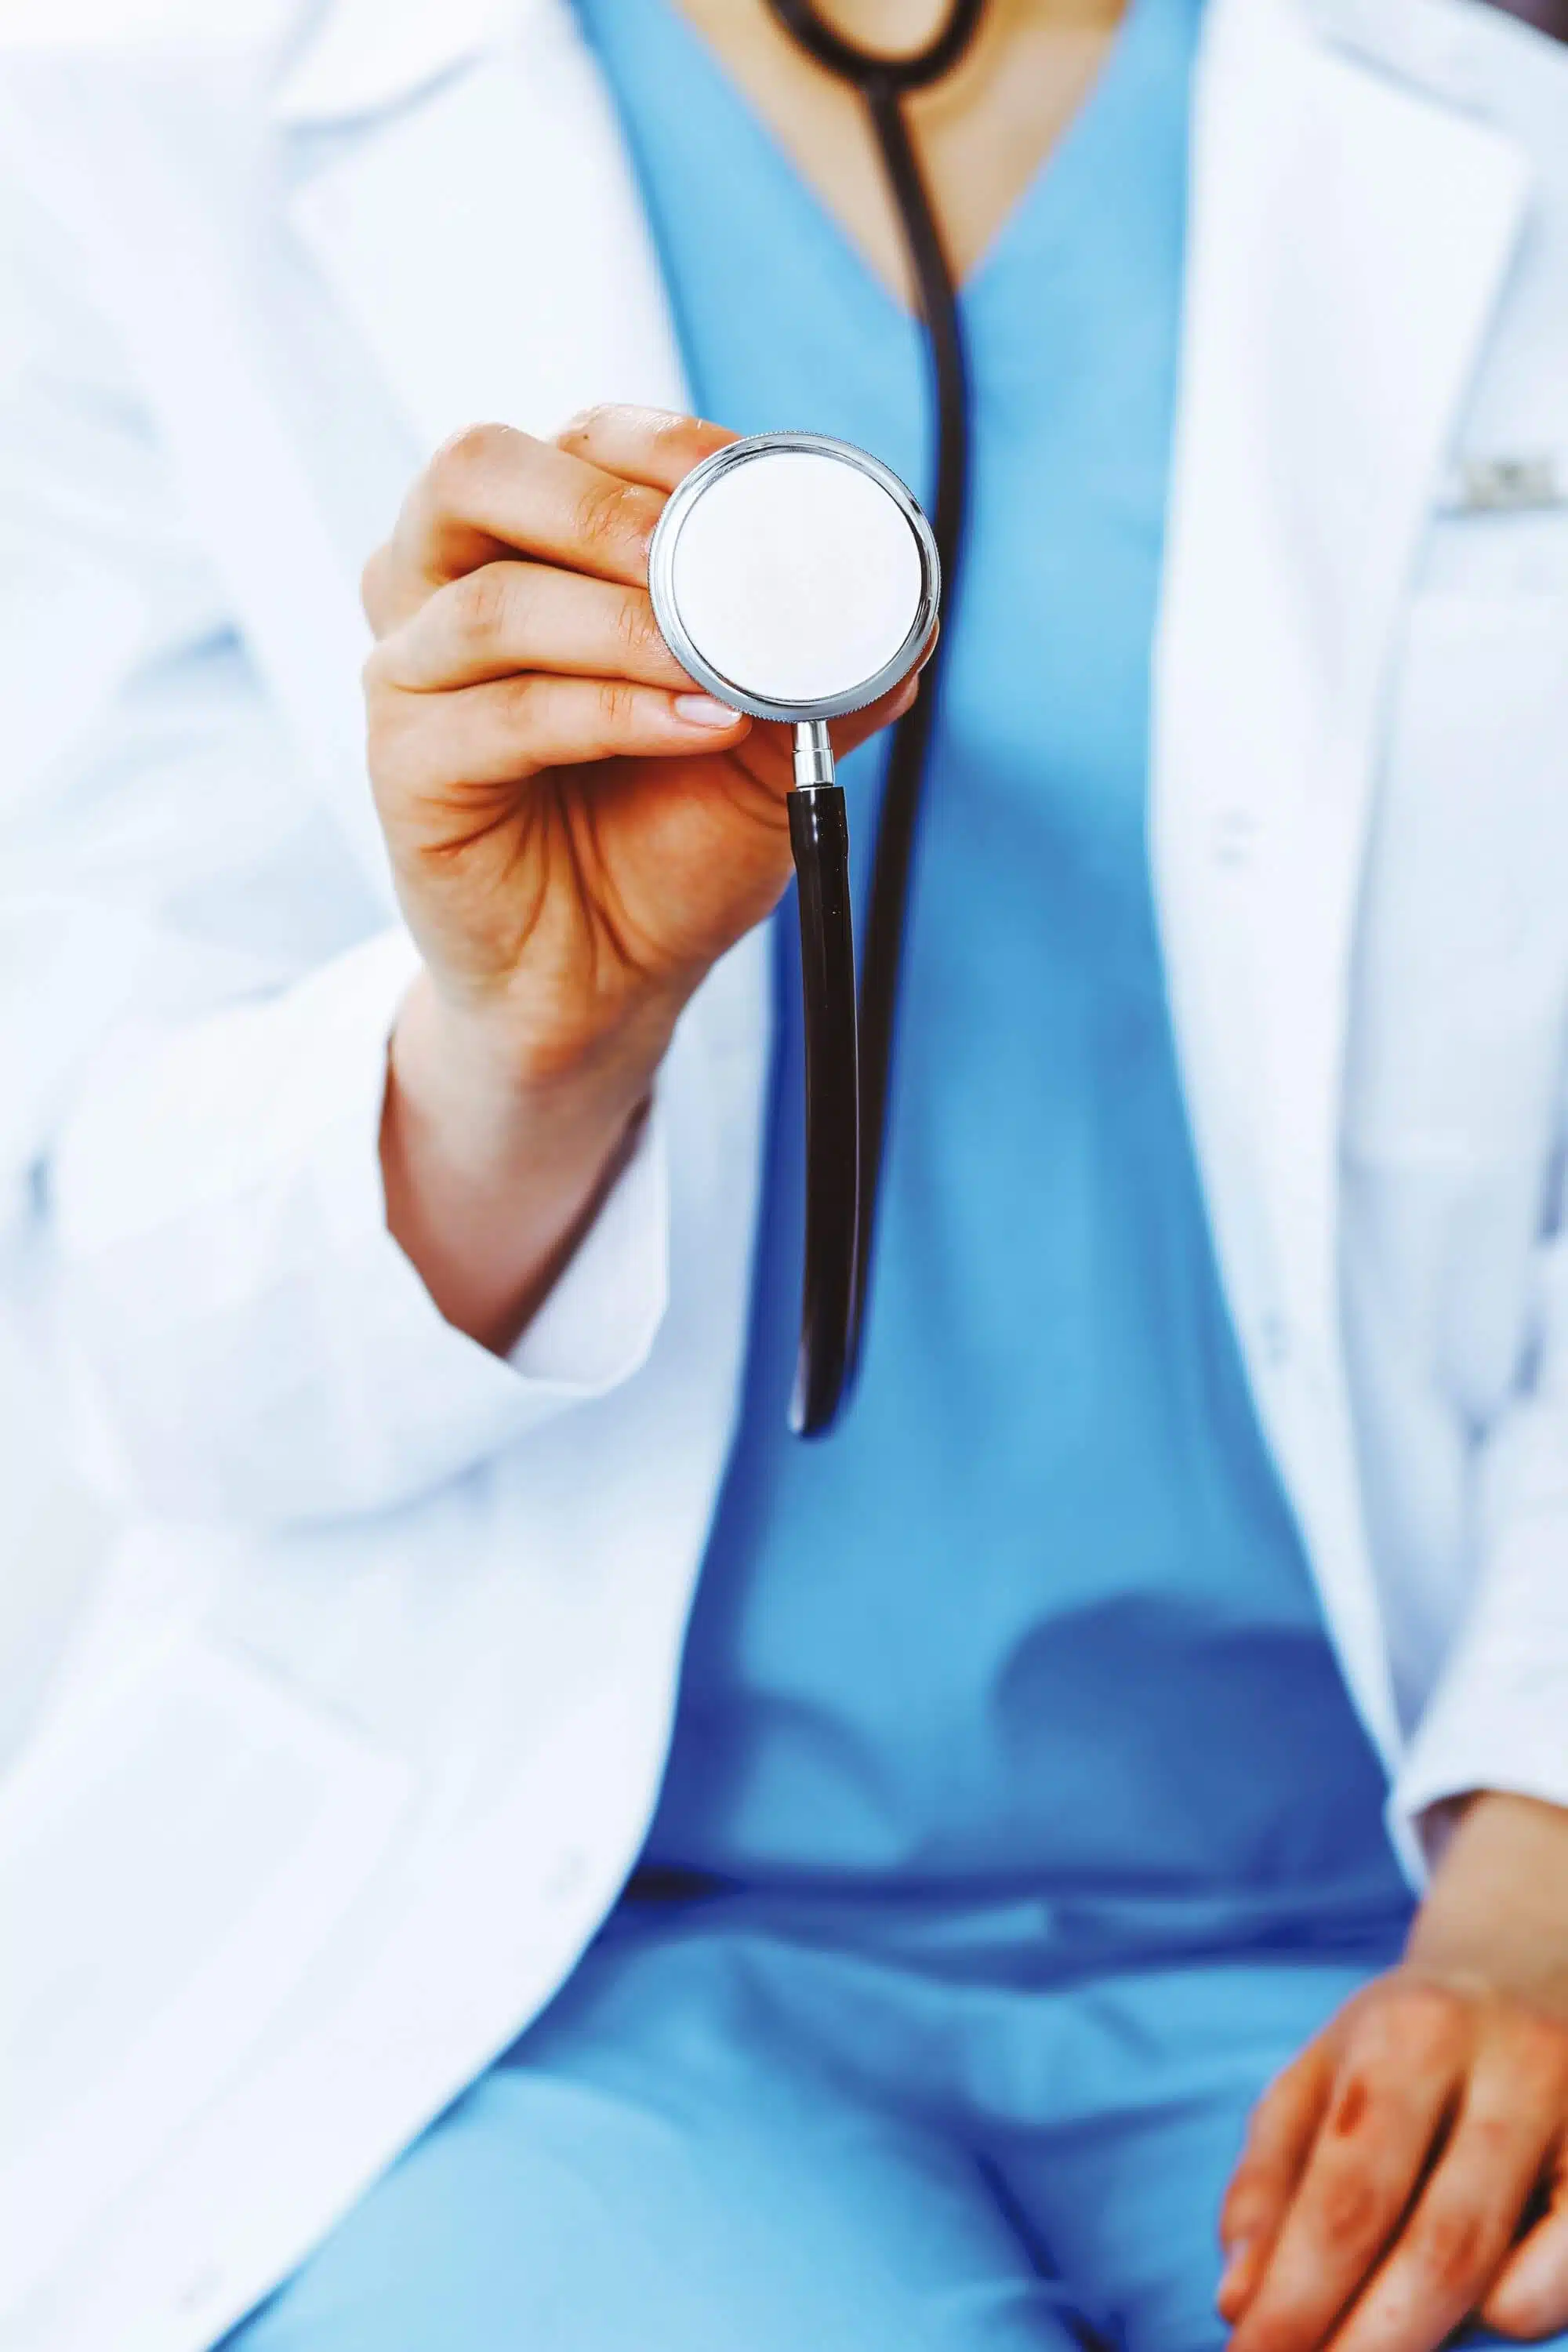 Erster Bericht des Medizinischen Dienstes zu Qualitätskontrollen in Krankenhäusern